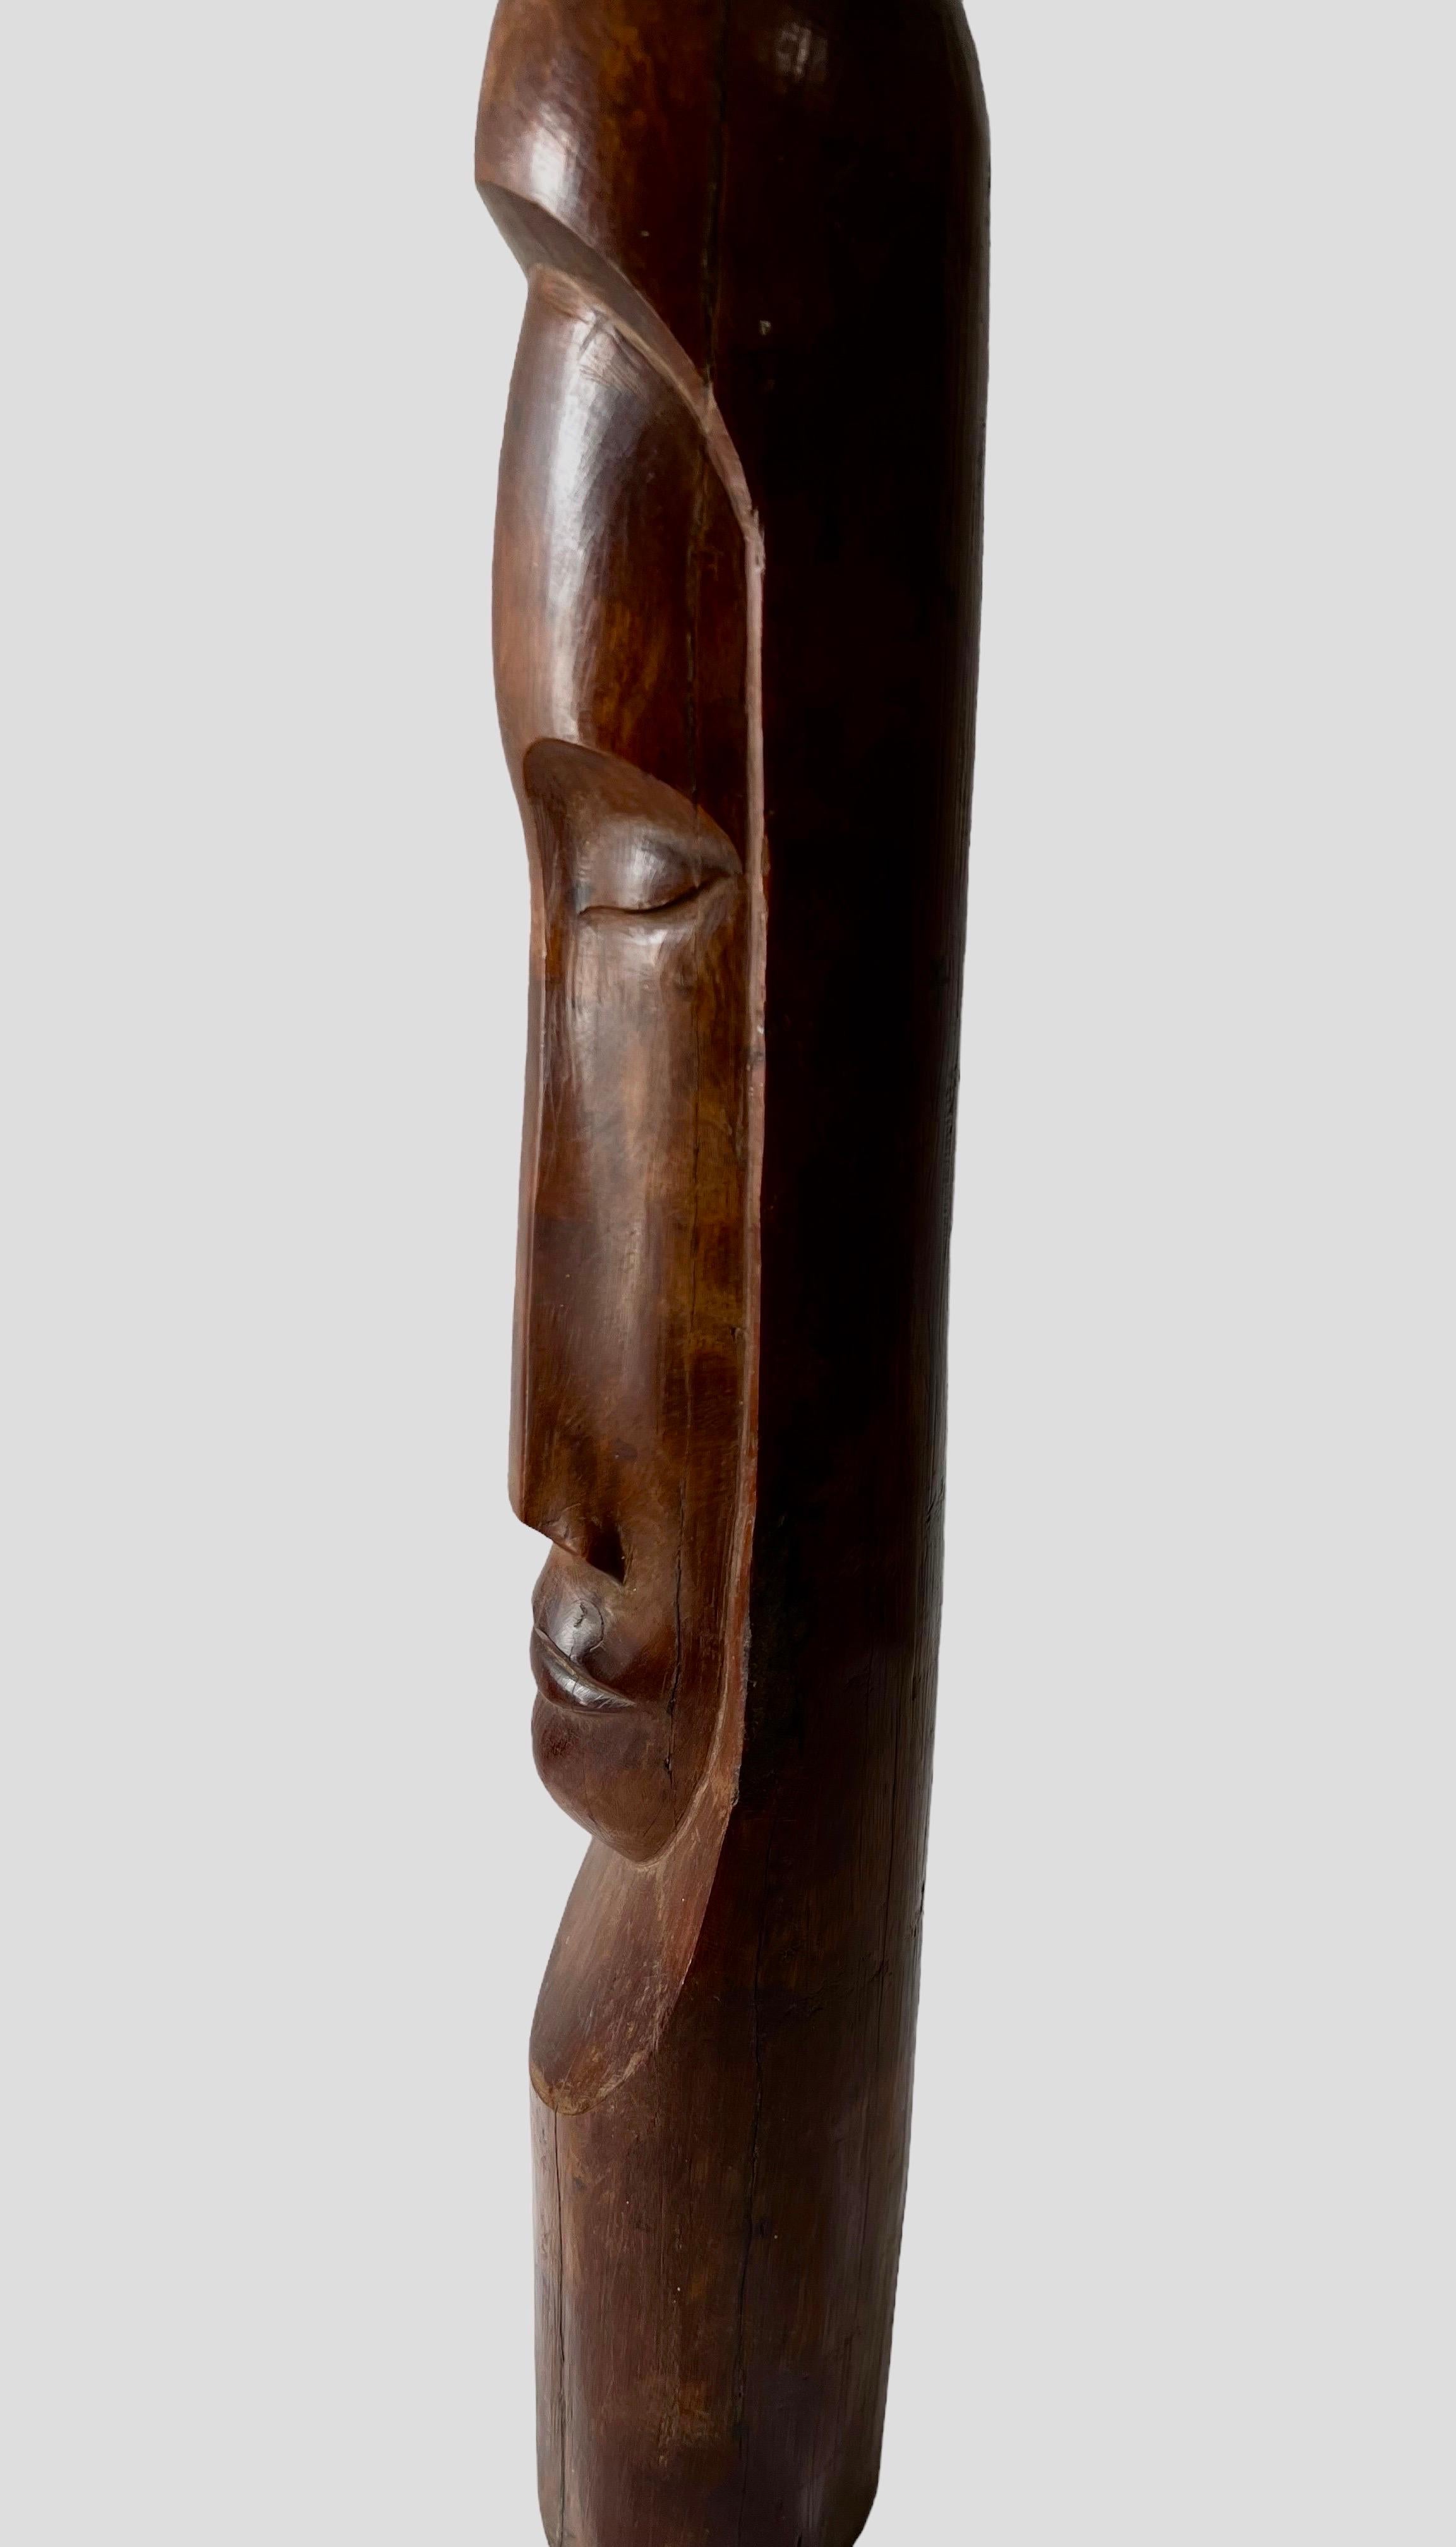 Cuban Master Florencio Gelabert Sculpture Large Wood Carving Bust Man Portrait For Sale 15